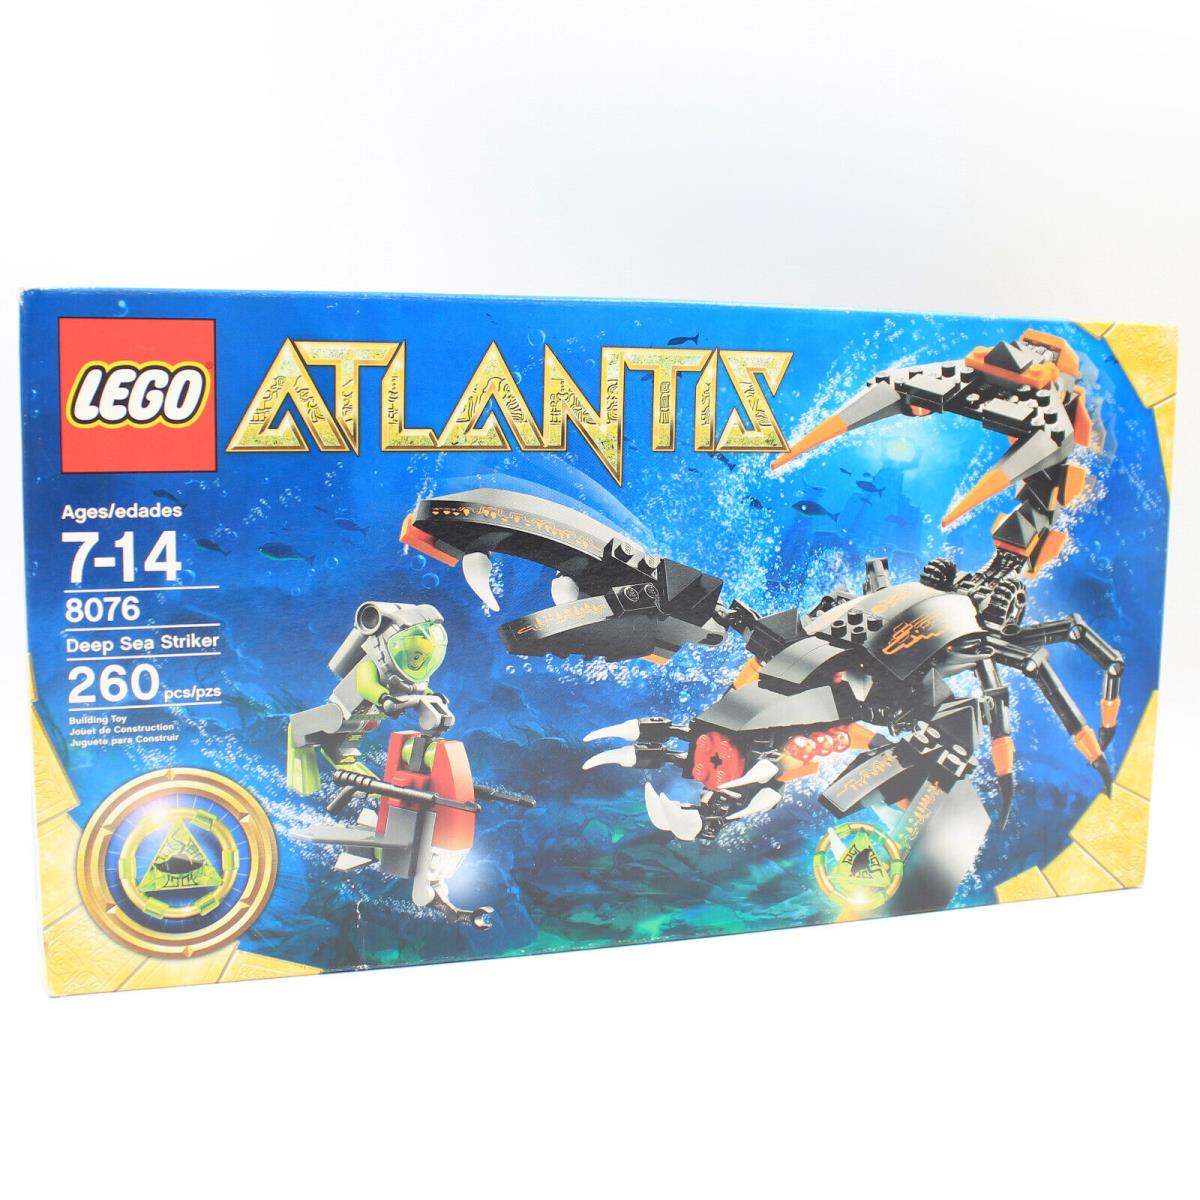 Lego Atlantis Deep Sea Striker 8076